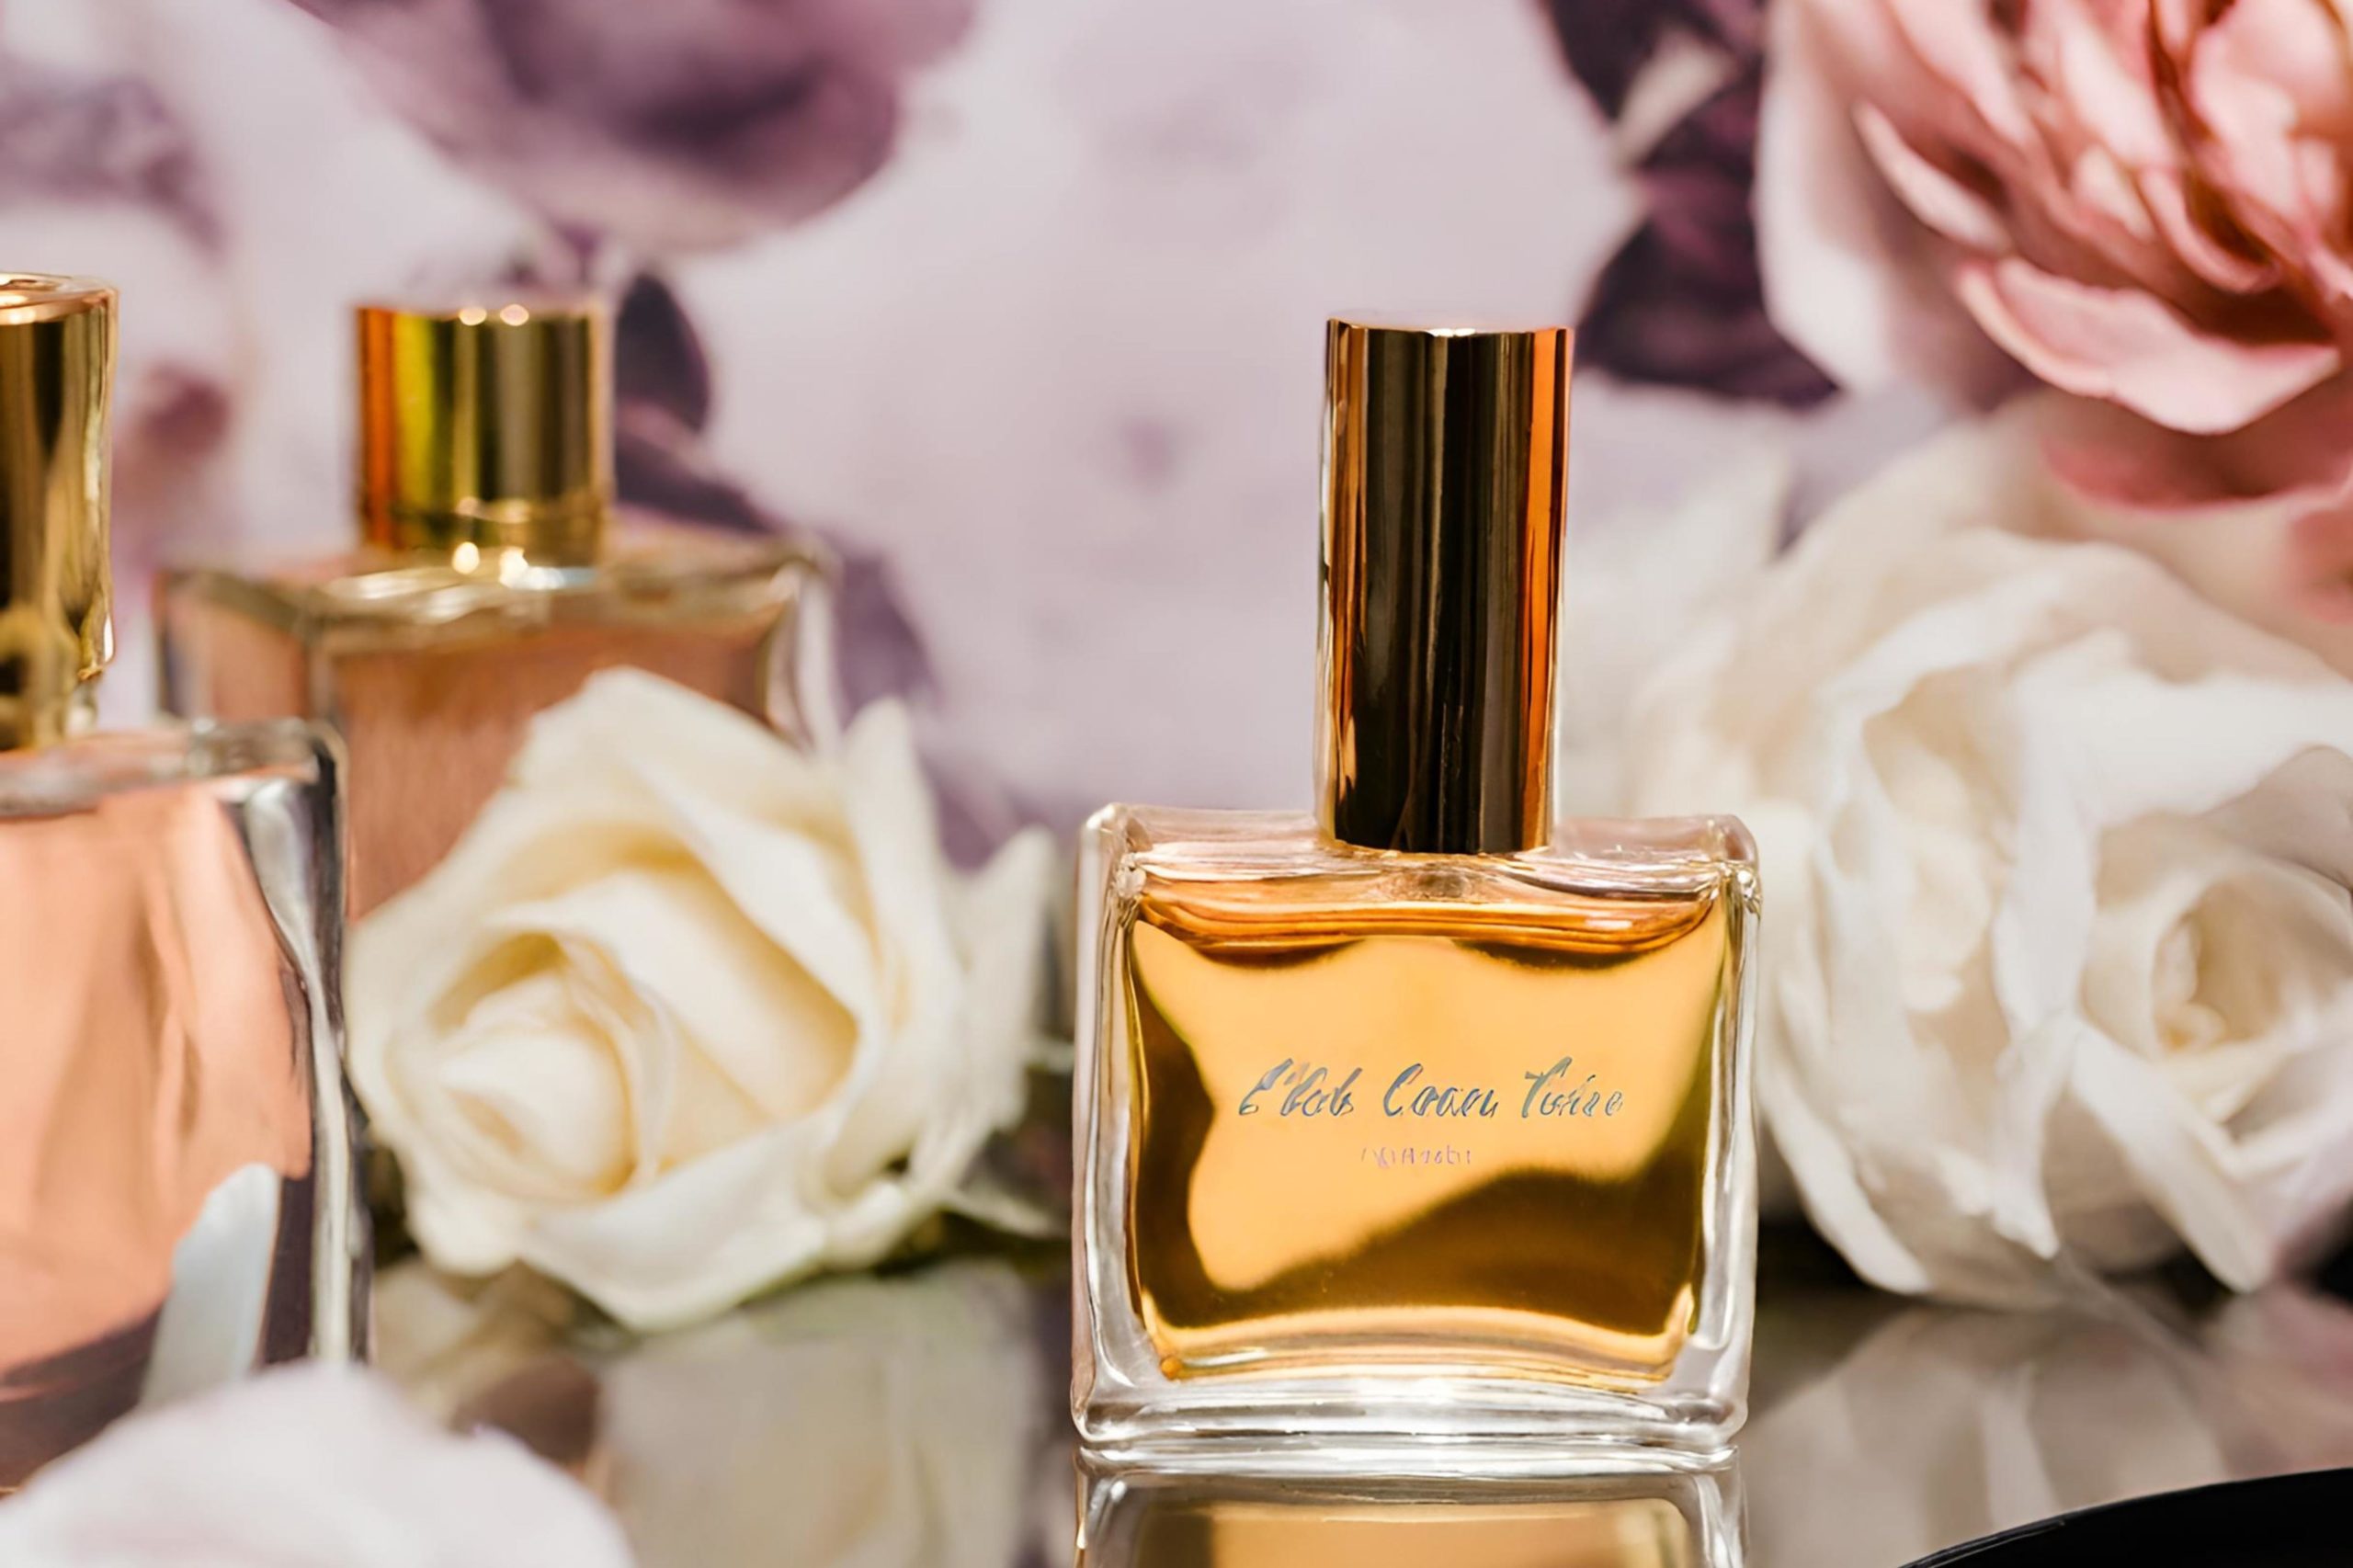 Melhores Perfumes Prada: 10 Ótimas Opções